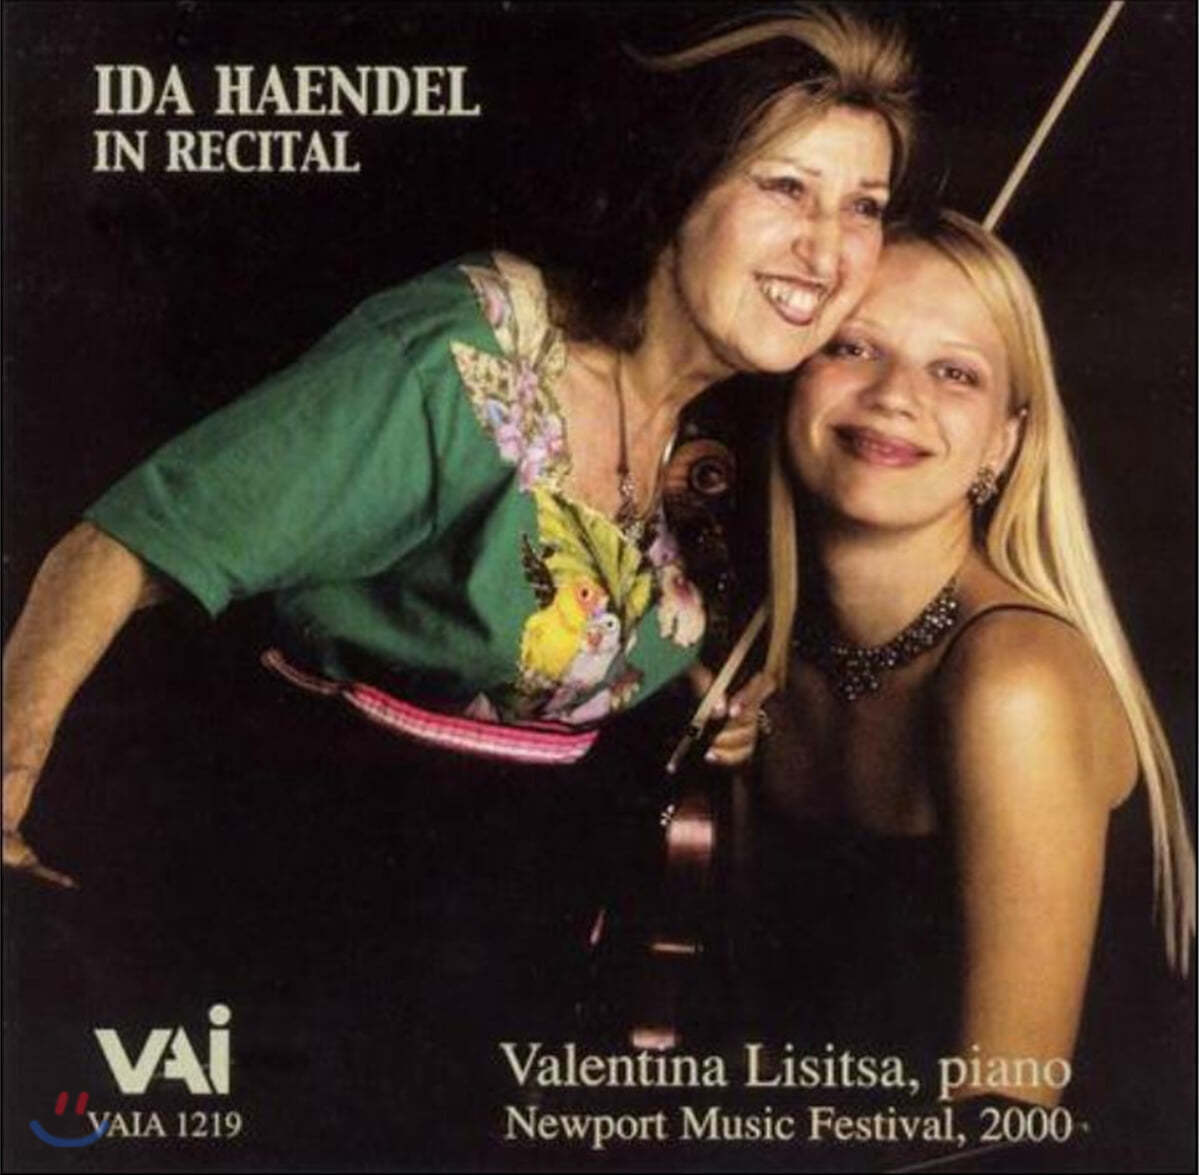 이다 헨델 리사이틀 (Ida Haendel in Recital with Valentina Lisitsa)